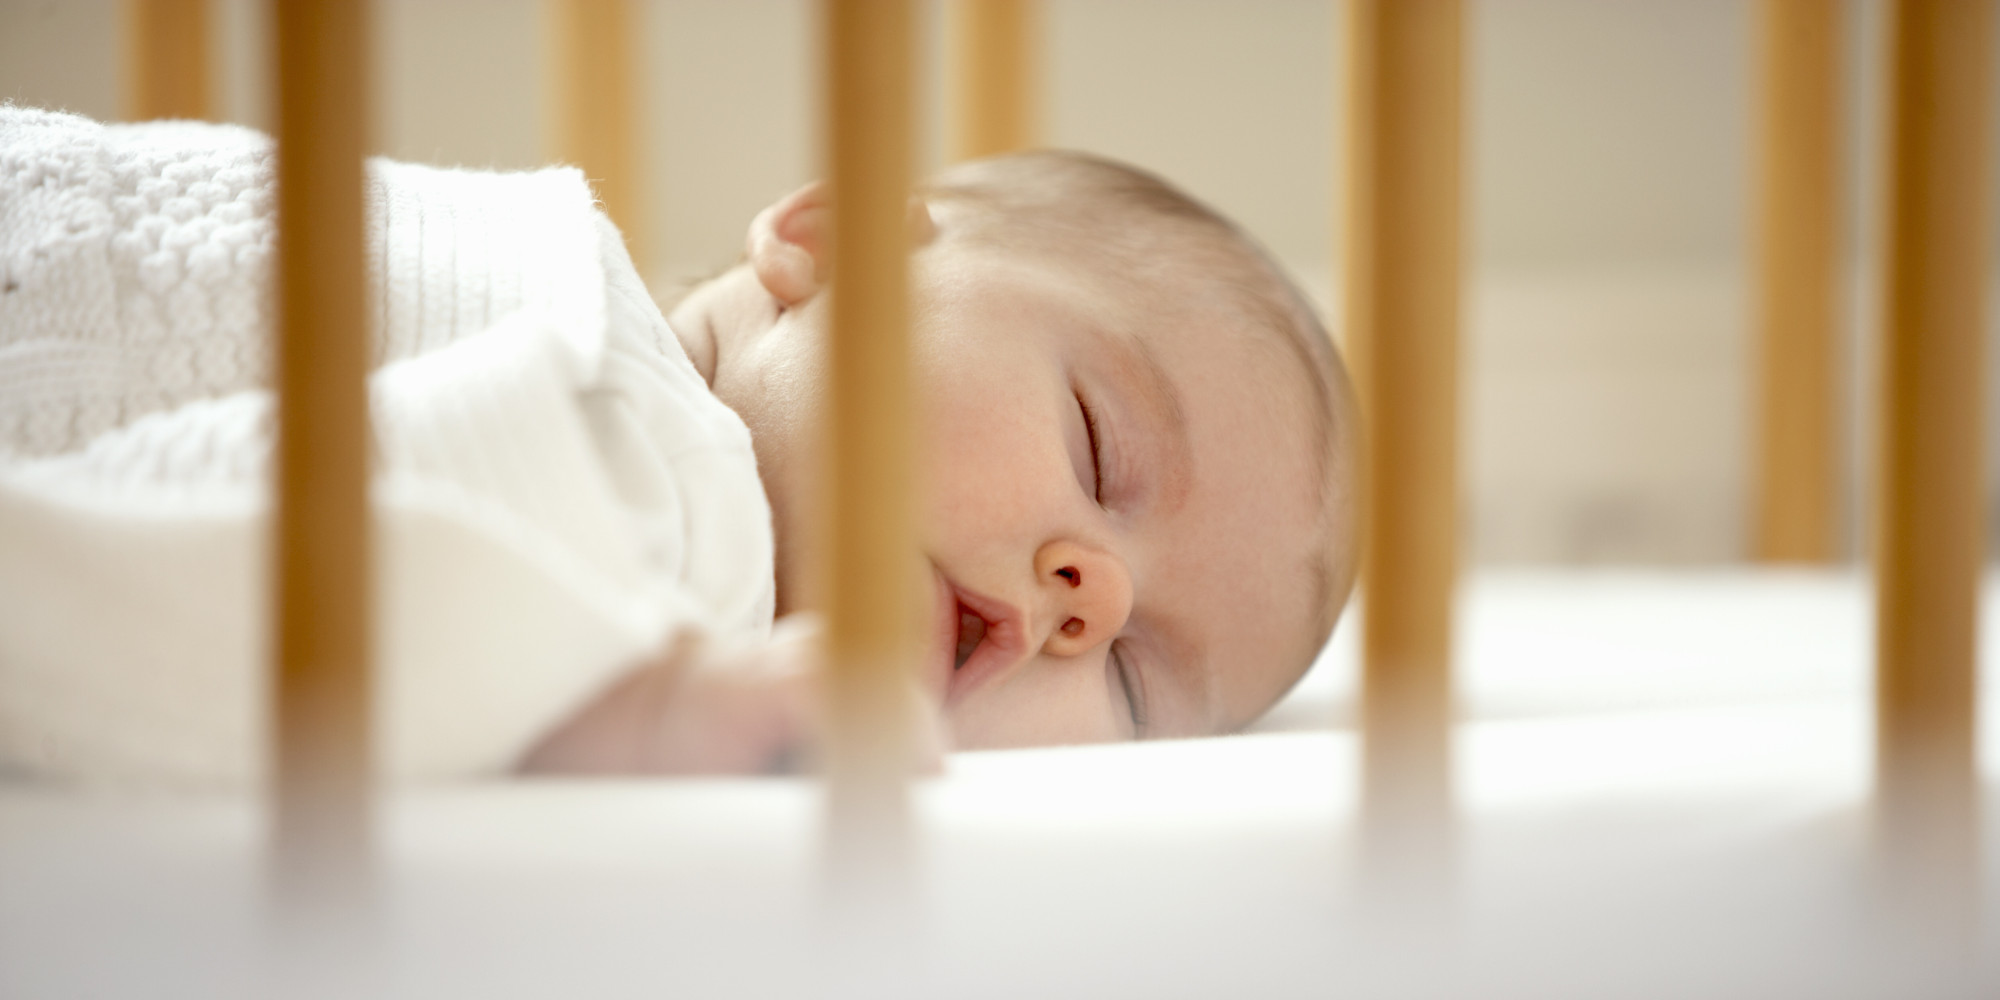 Mort subite du nourrisson: voici comment diminuer les risques